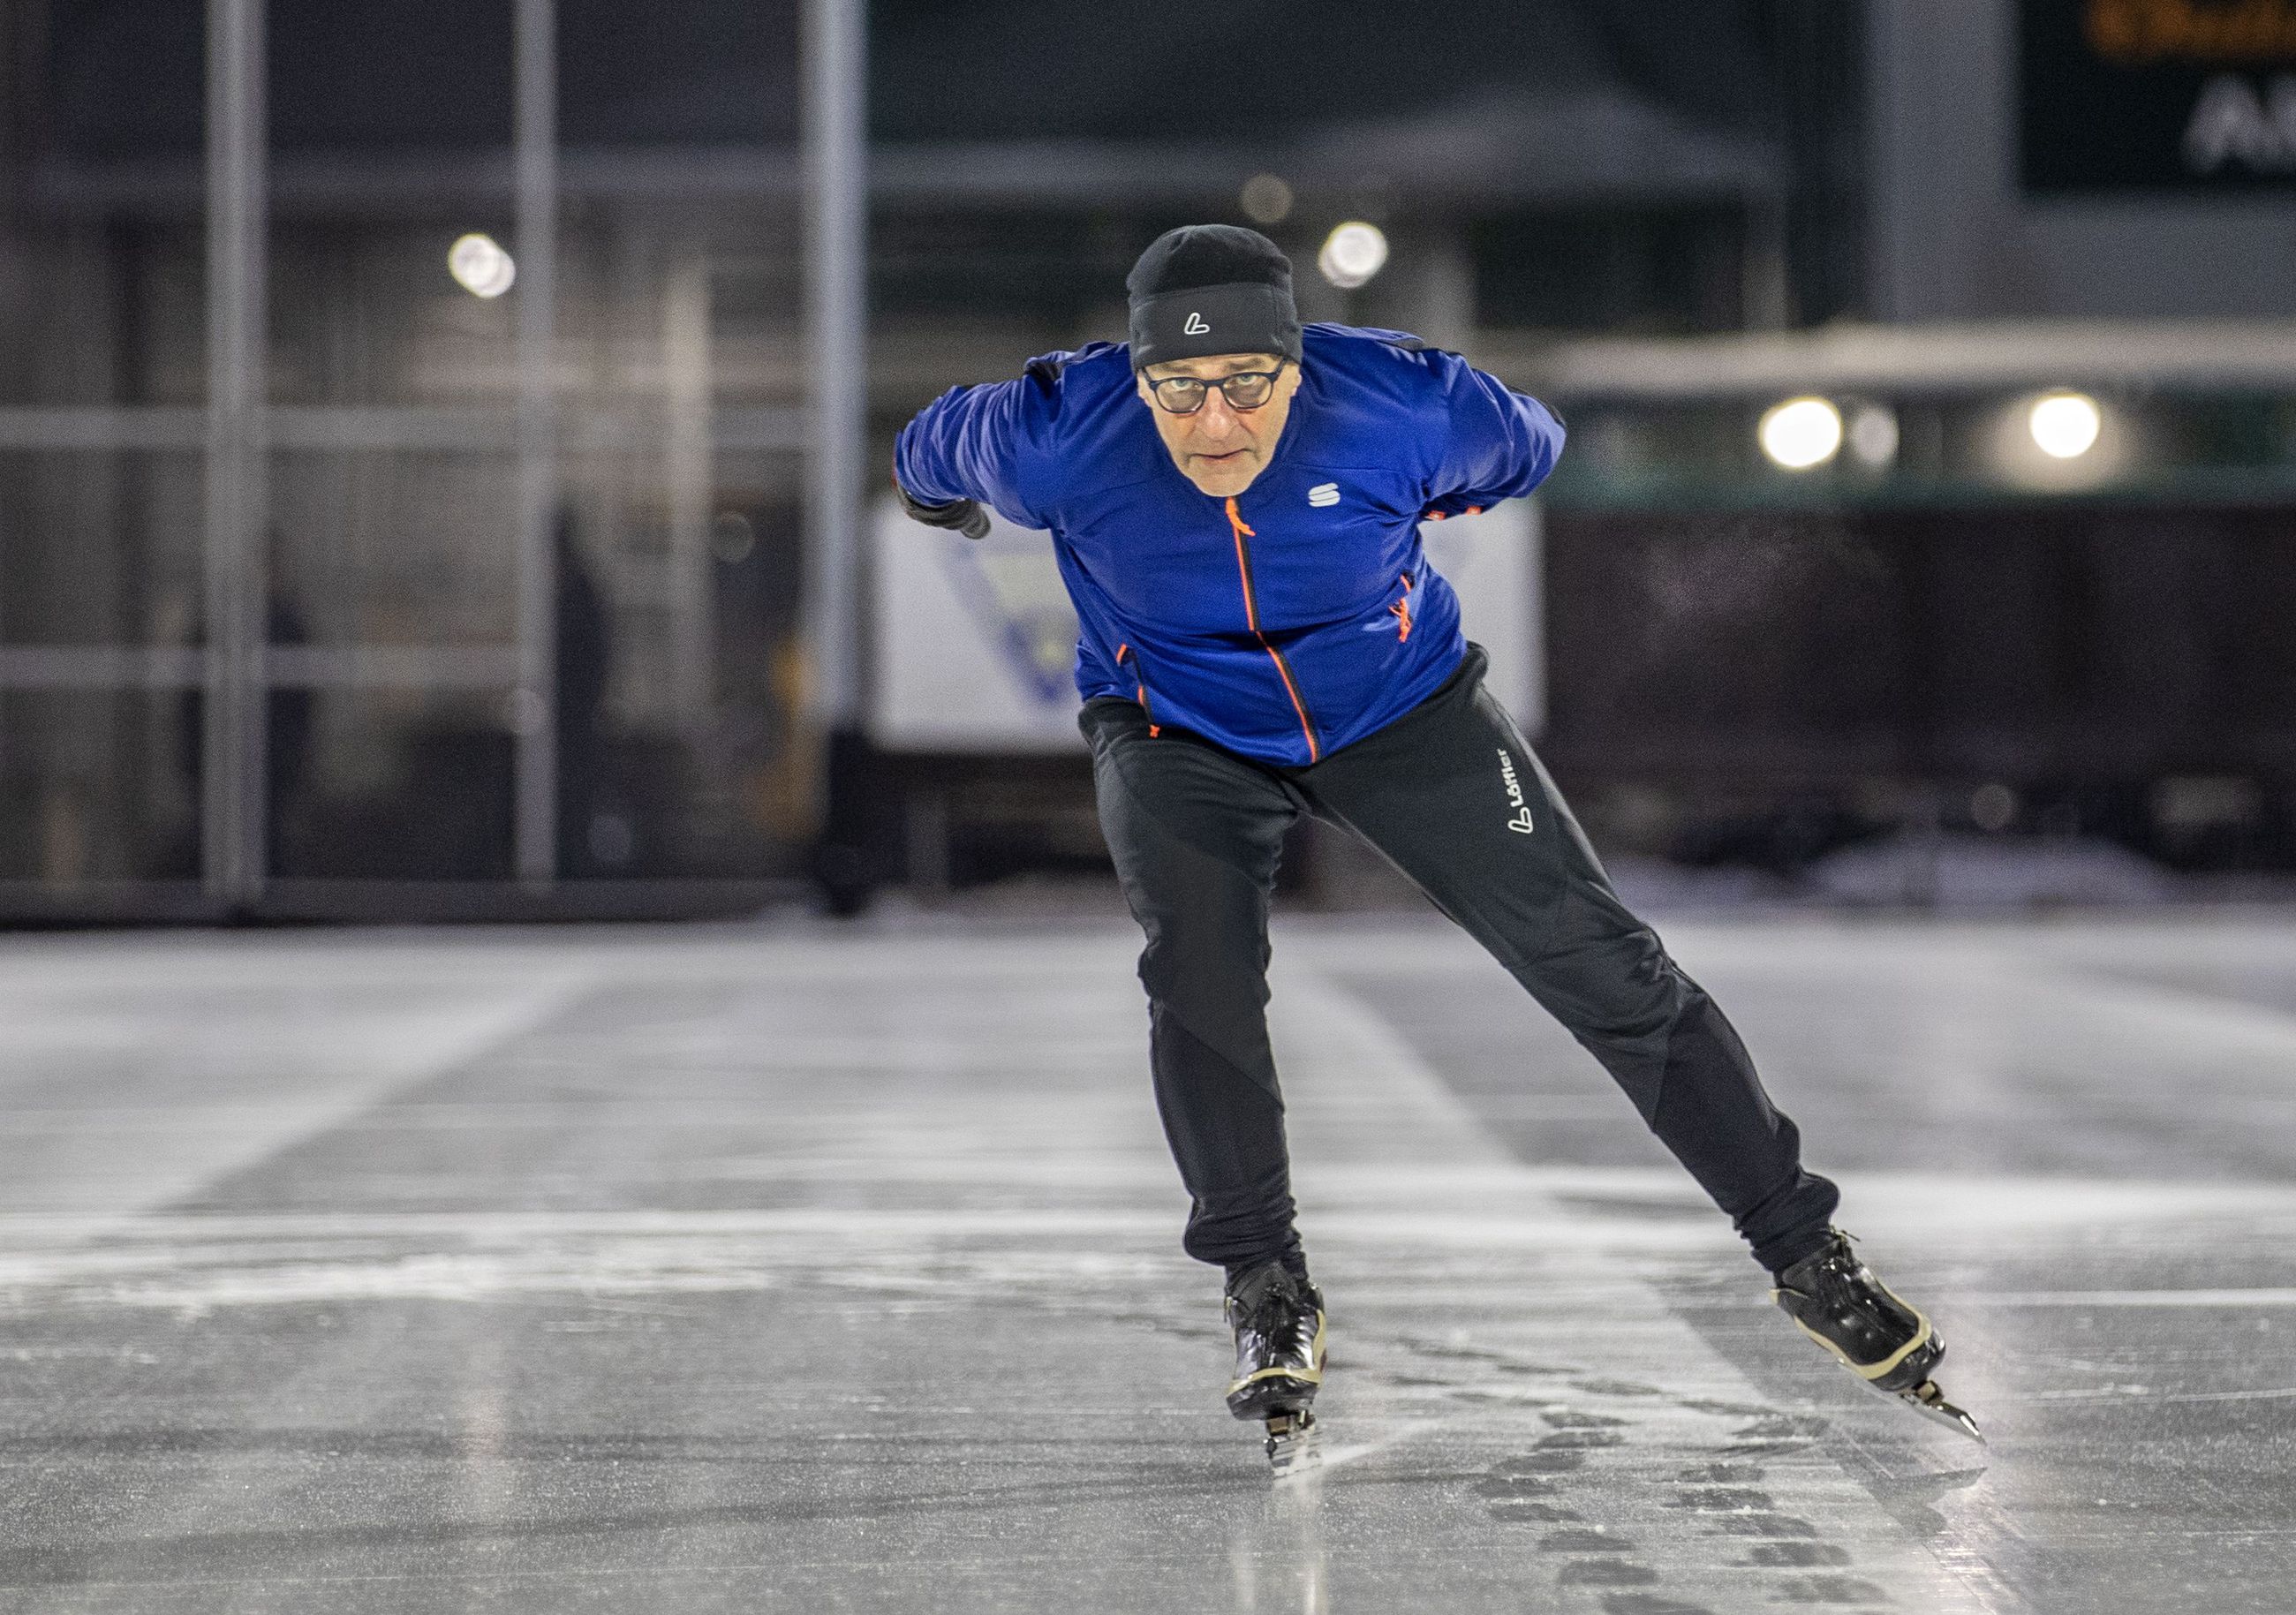 Oulun Tarmon Jouko Vesterlund oli Suomen nopein pikaluistelija 1980-luvulla  – Keskuskentän jäällä railot piti merkitä lumipalloilla, joskus Heinäpäästä  leijaili nokea | Kaleva